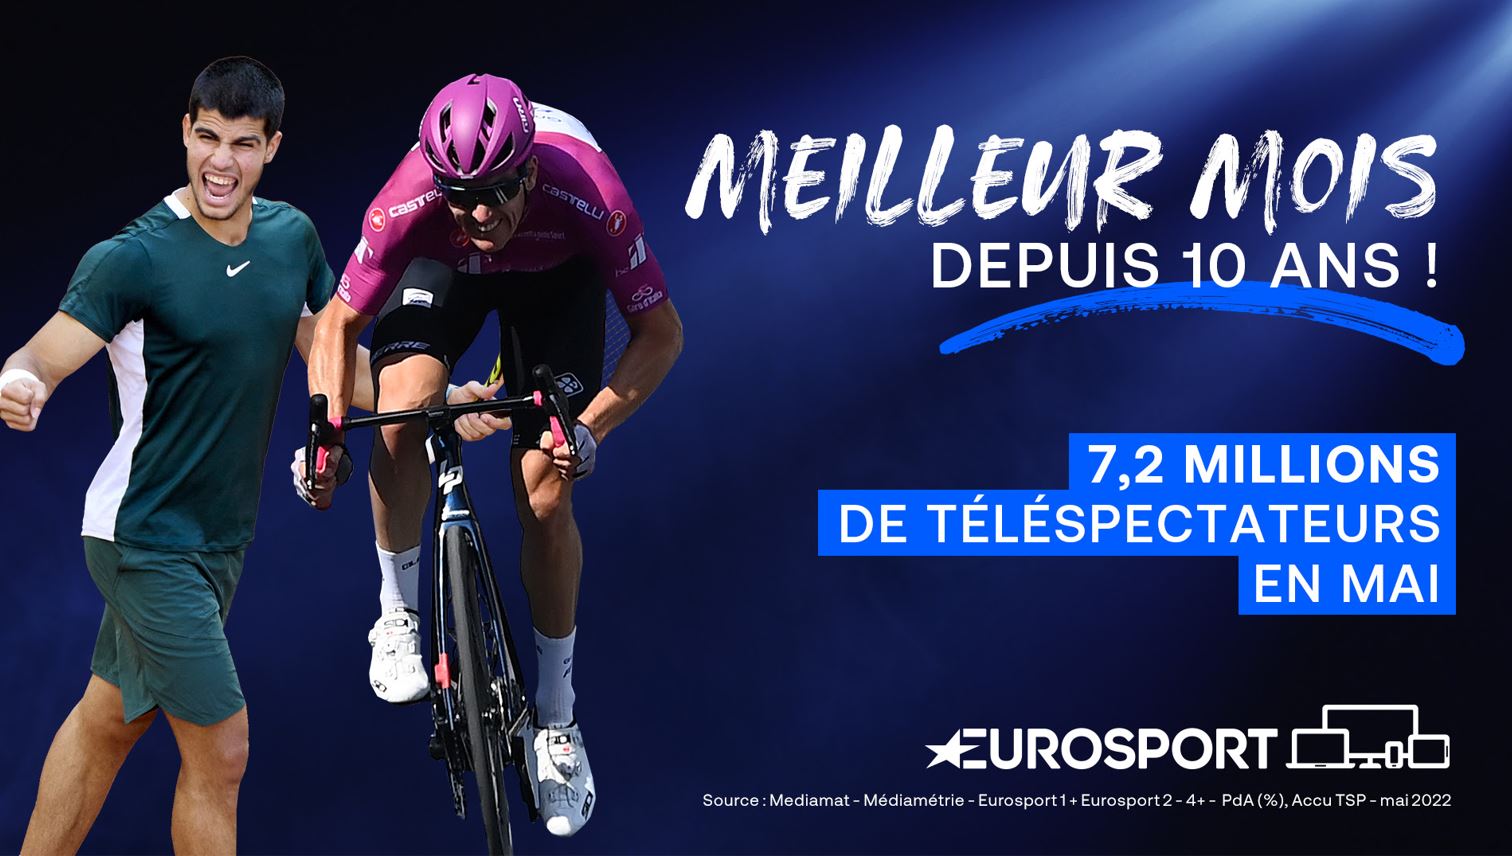 Eurosport réalise son meilleur mois depuis 10 ans